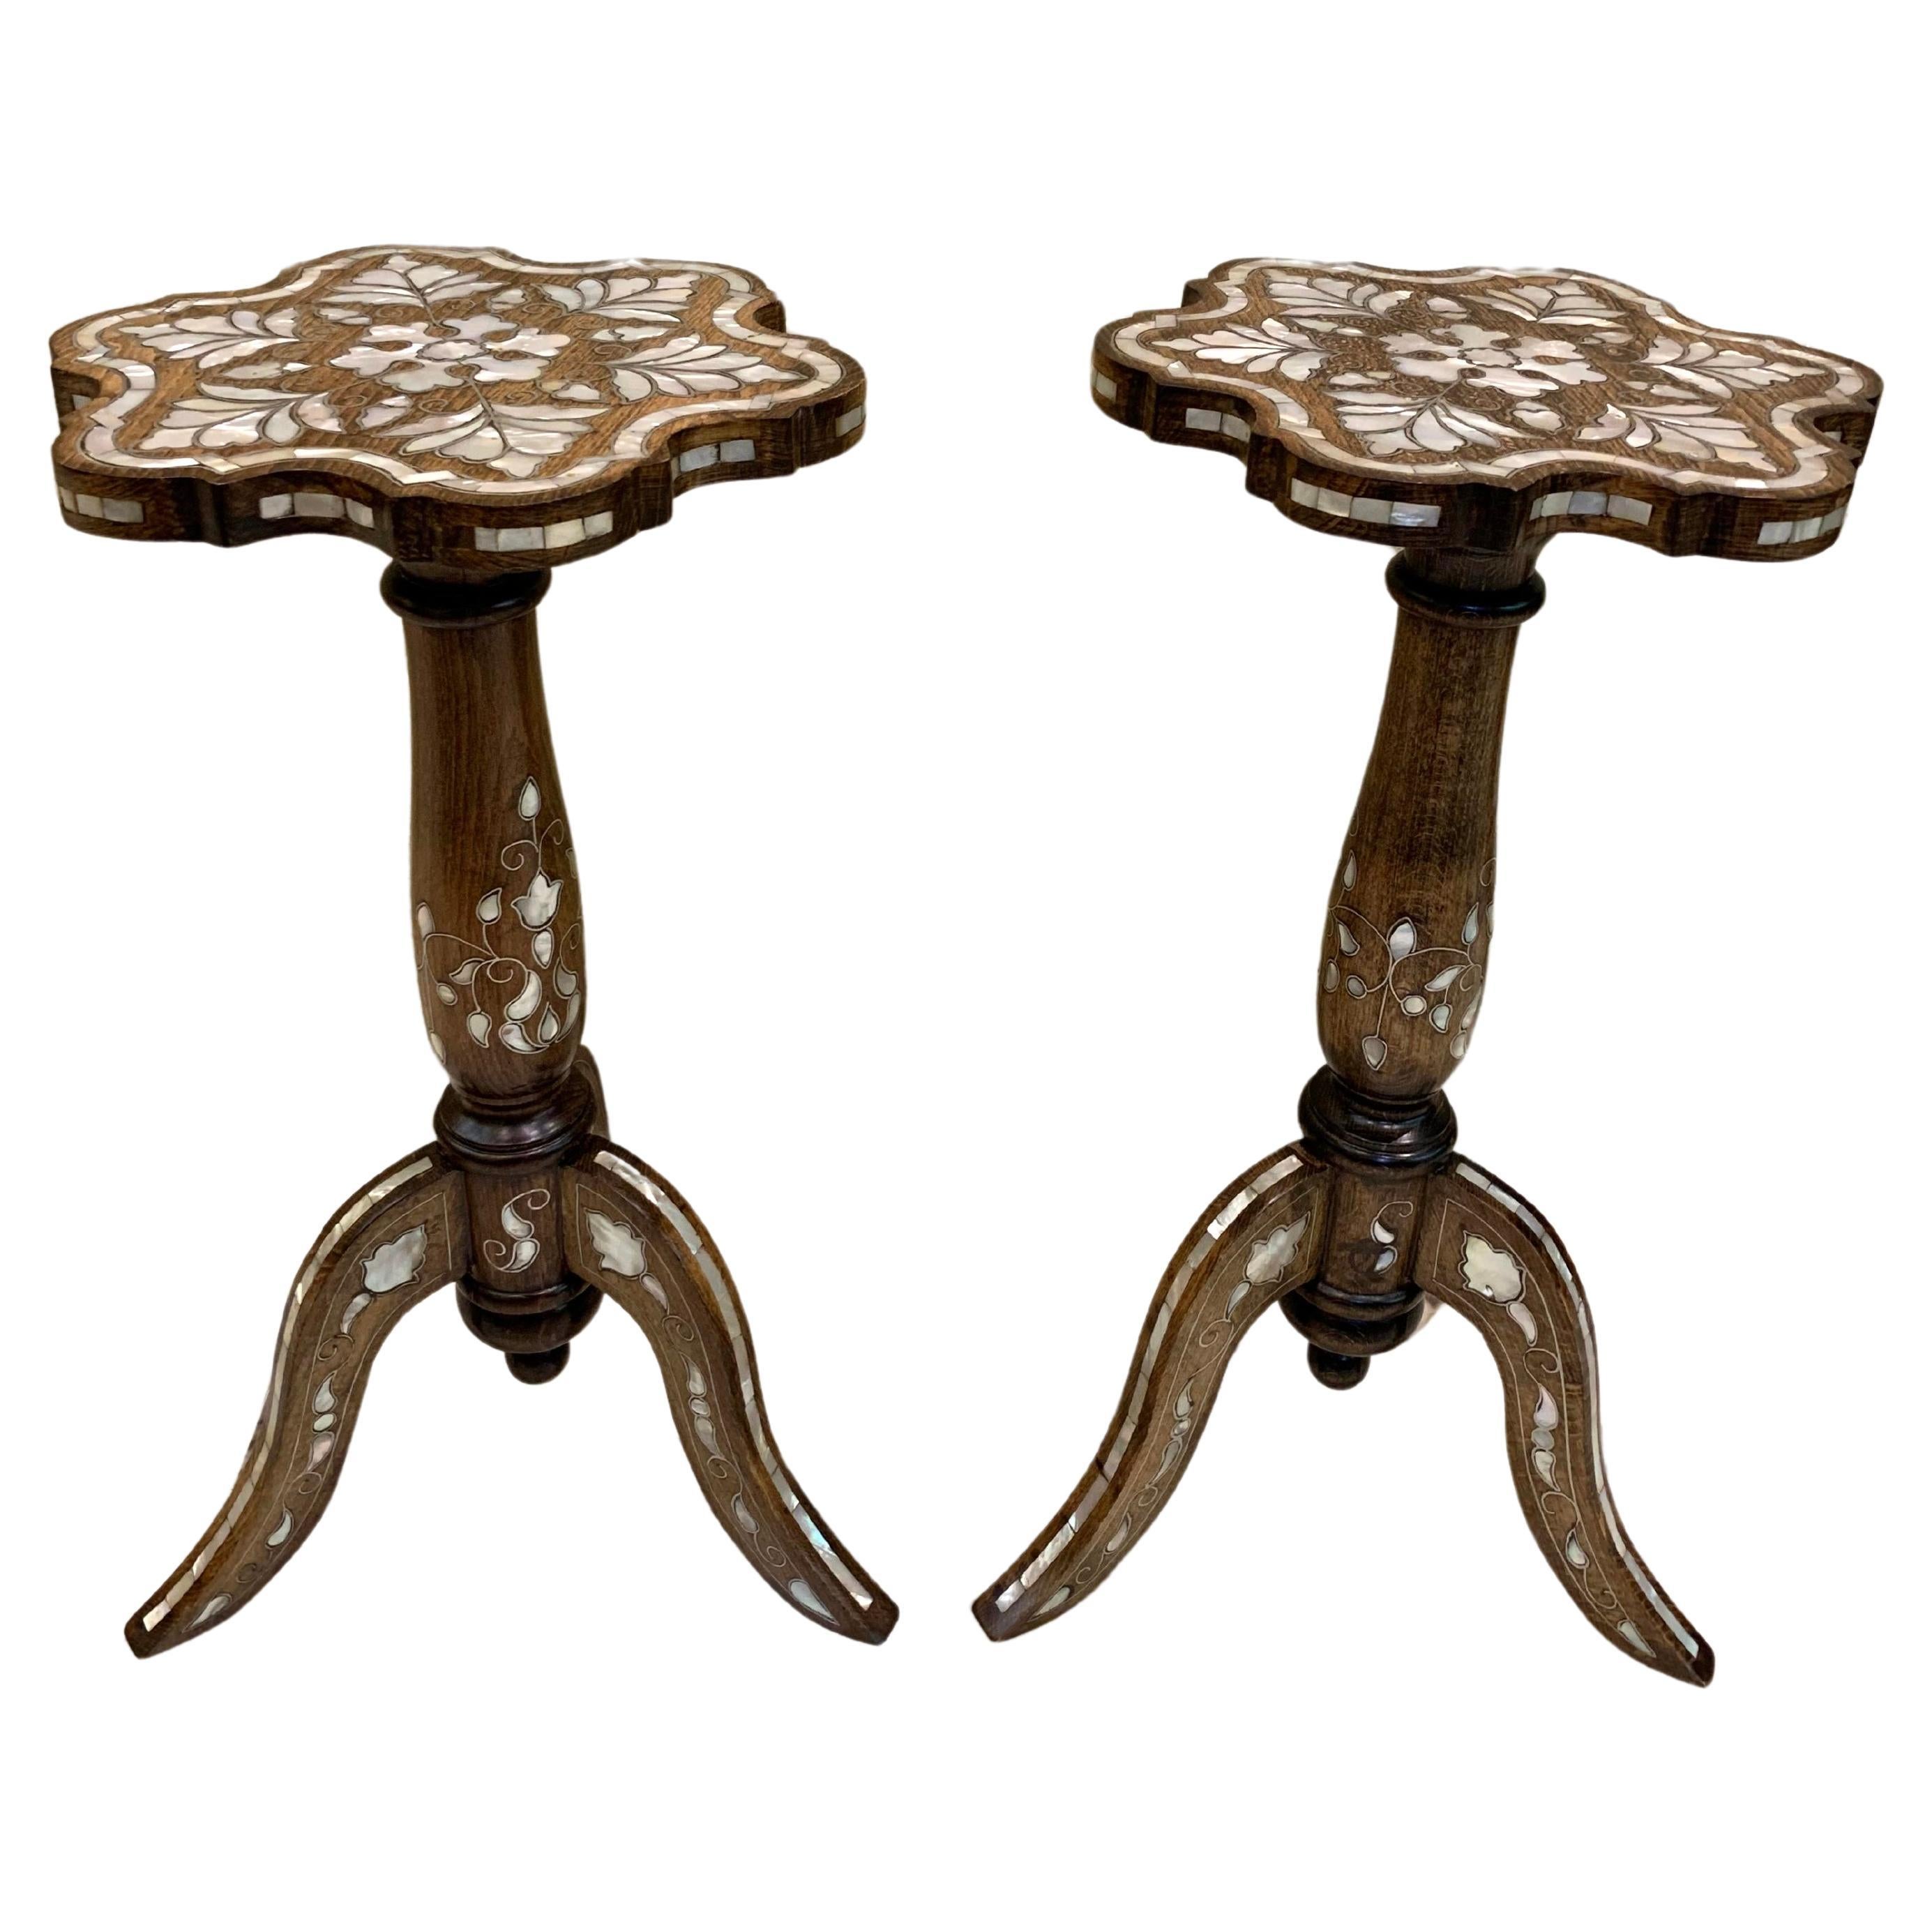 Paire de tables basses en bois avec pieds incrustés de nacre, fabriquées à la main en vente